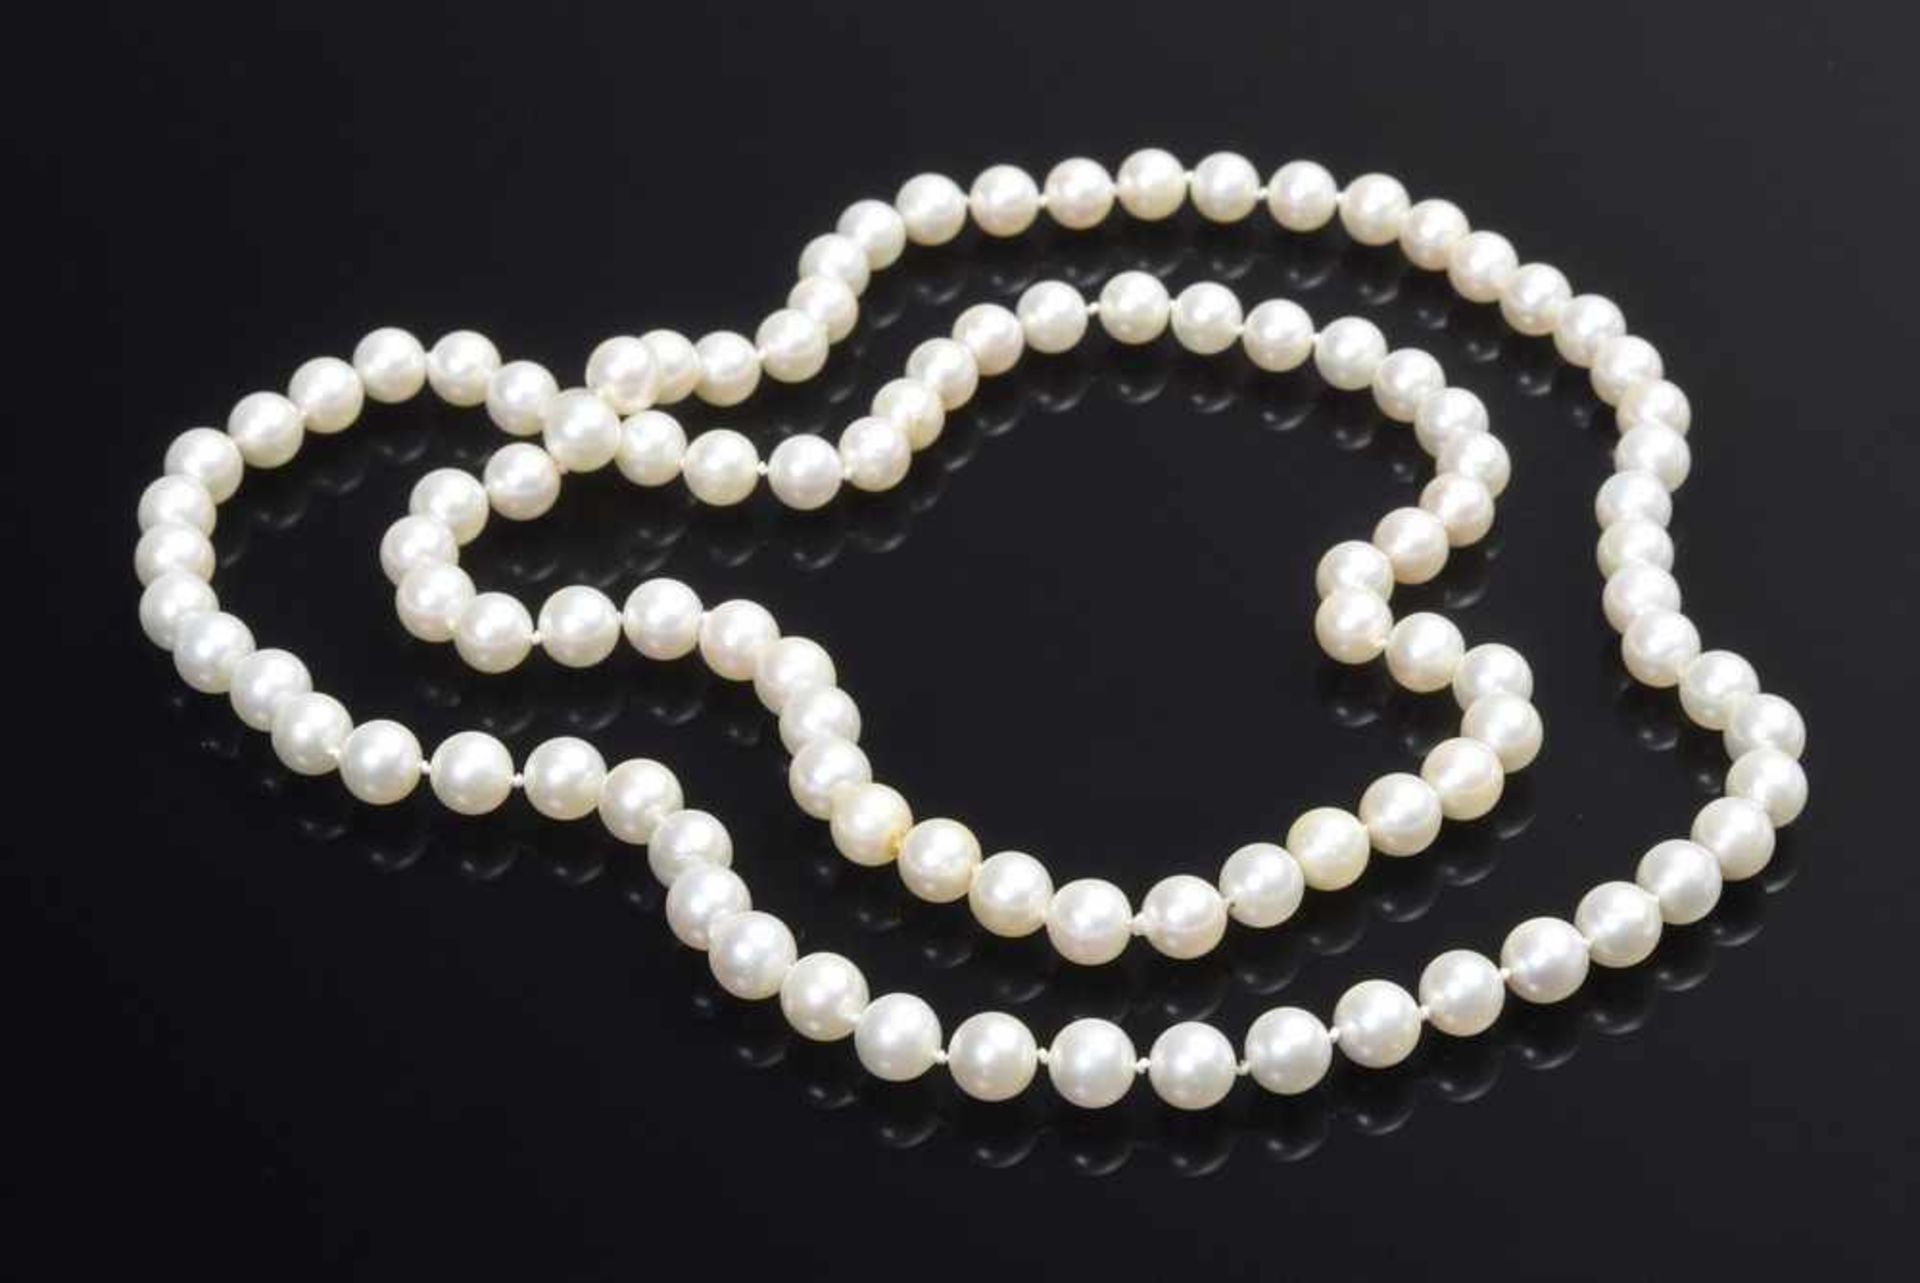 Sautoir Zuchtperlenkette mit 103 Perlen (Ø ca. 7,7mm), Farbe weiß, L. 90cm, 66,81gSautoir cultured